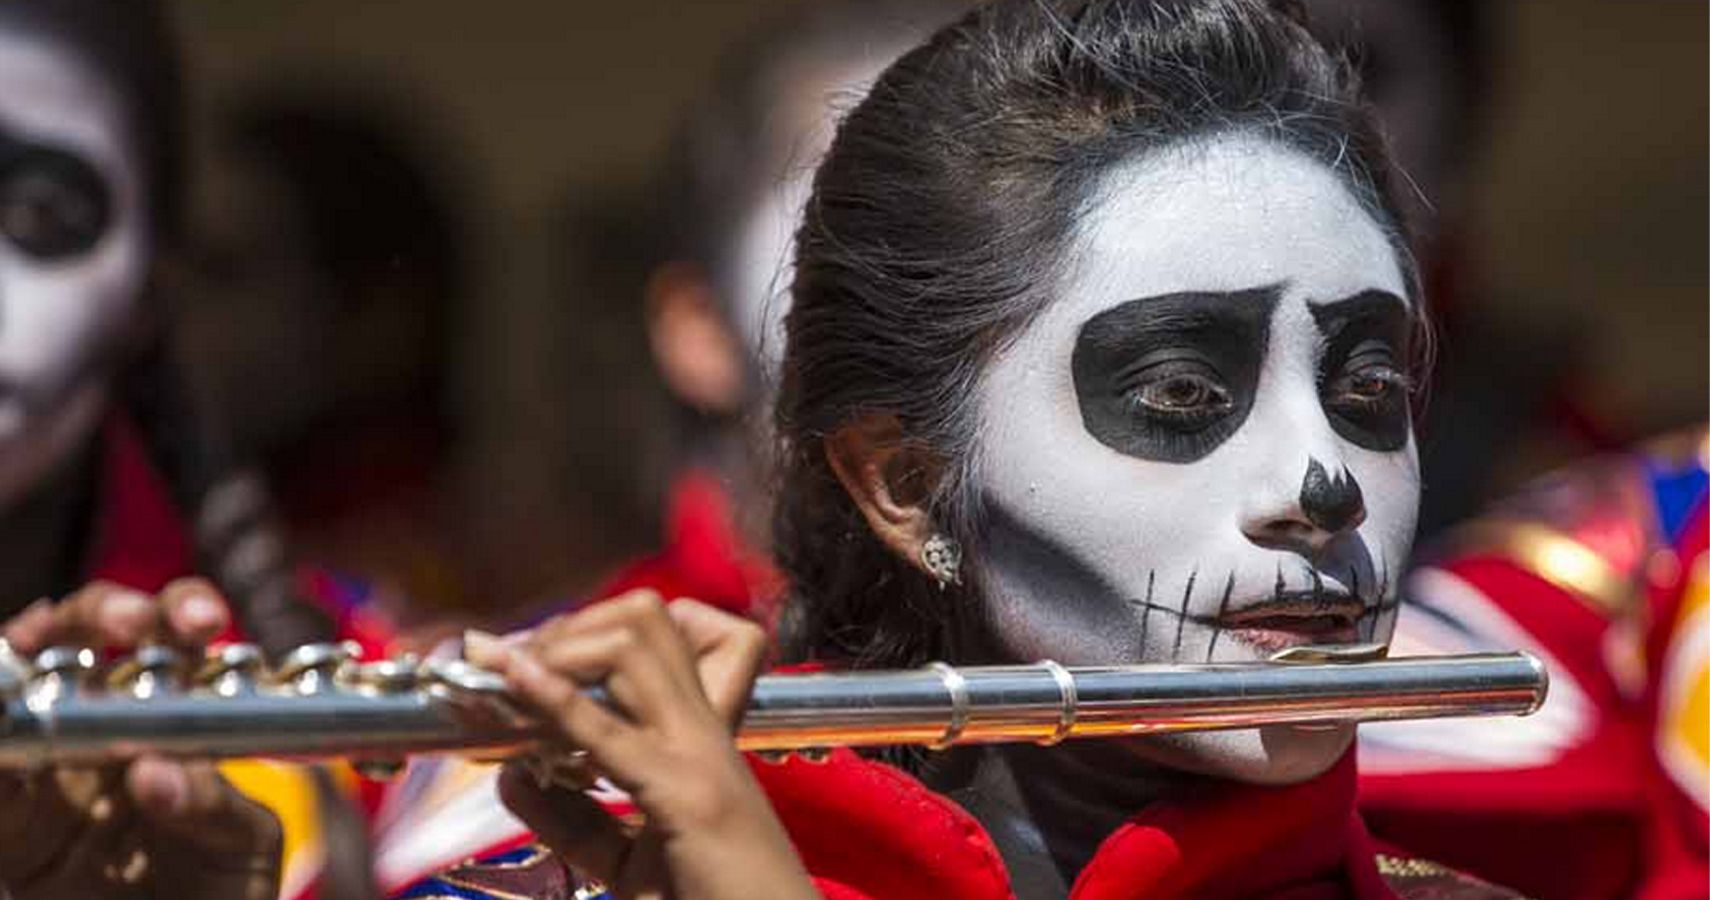 Mexico esta convidando turistas para as comemoracoes do Dia dos